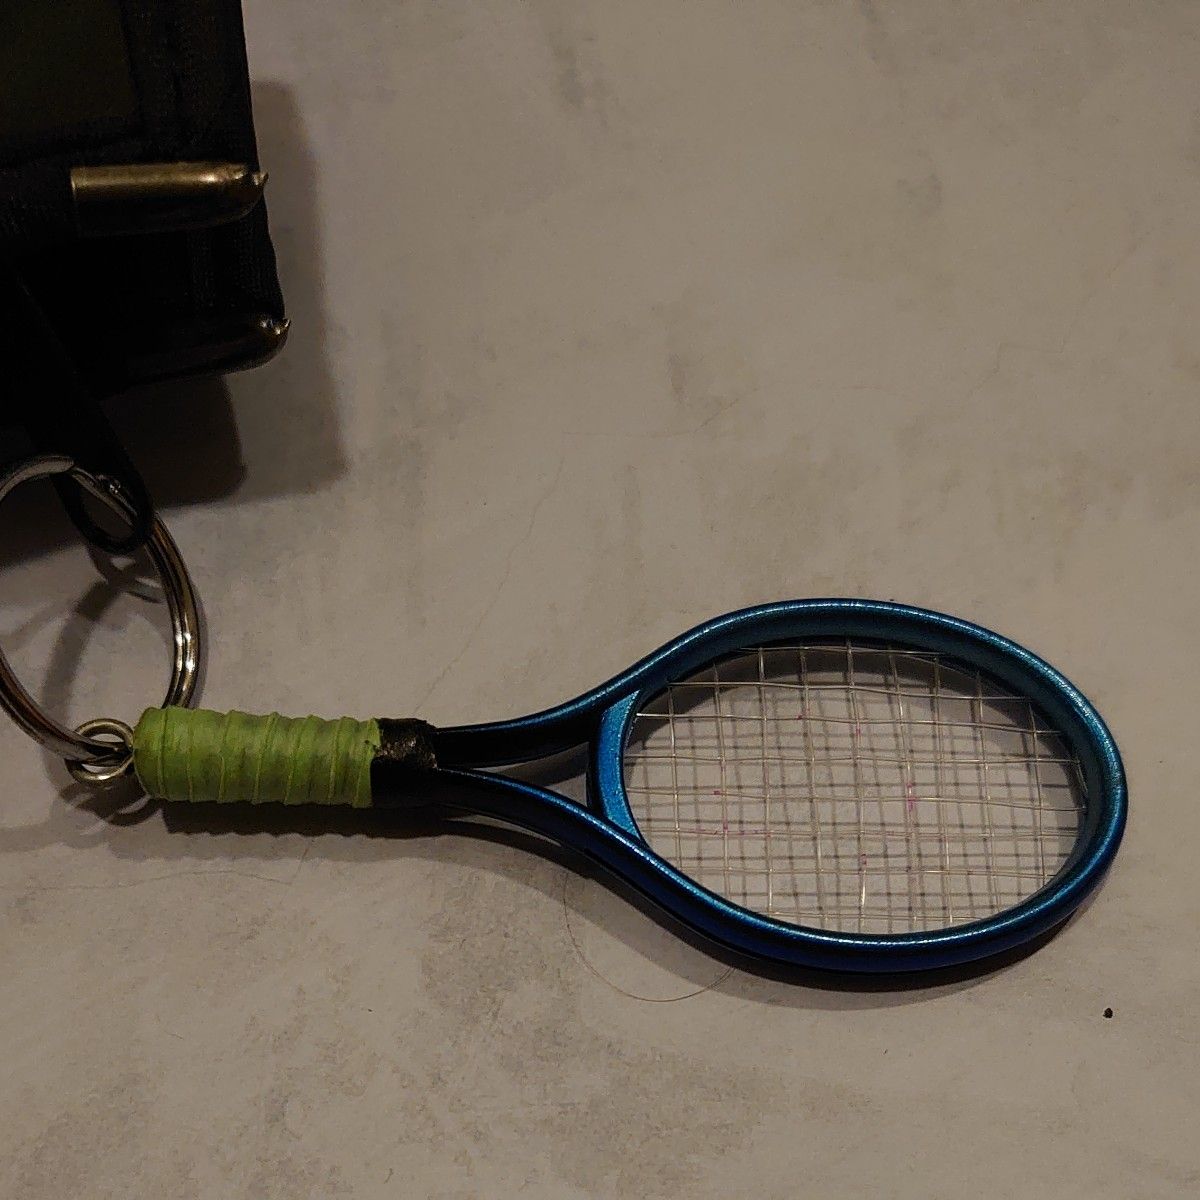 硬式テニスラケット 3本セット YONEX YAMAHA GOSEN